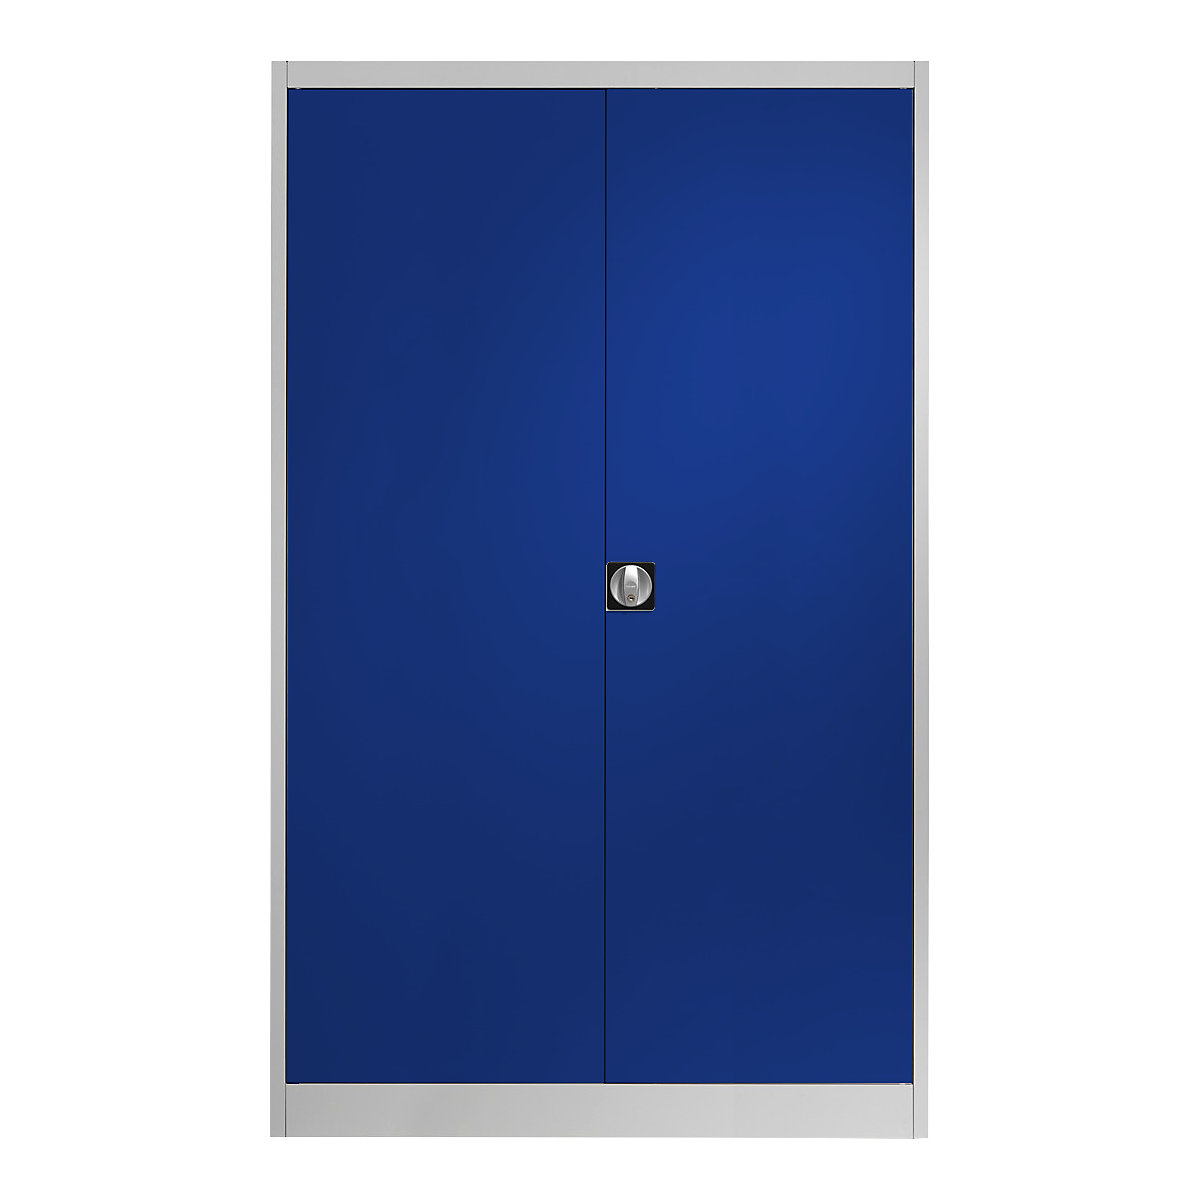 Szárnyas-ajtós acélszekrény – mauser, 4 polc, szélesség 1200 mm, világosszürke / ultramarin kék, külső mélység 420 mm-12